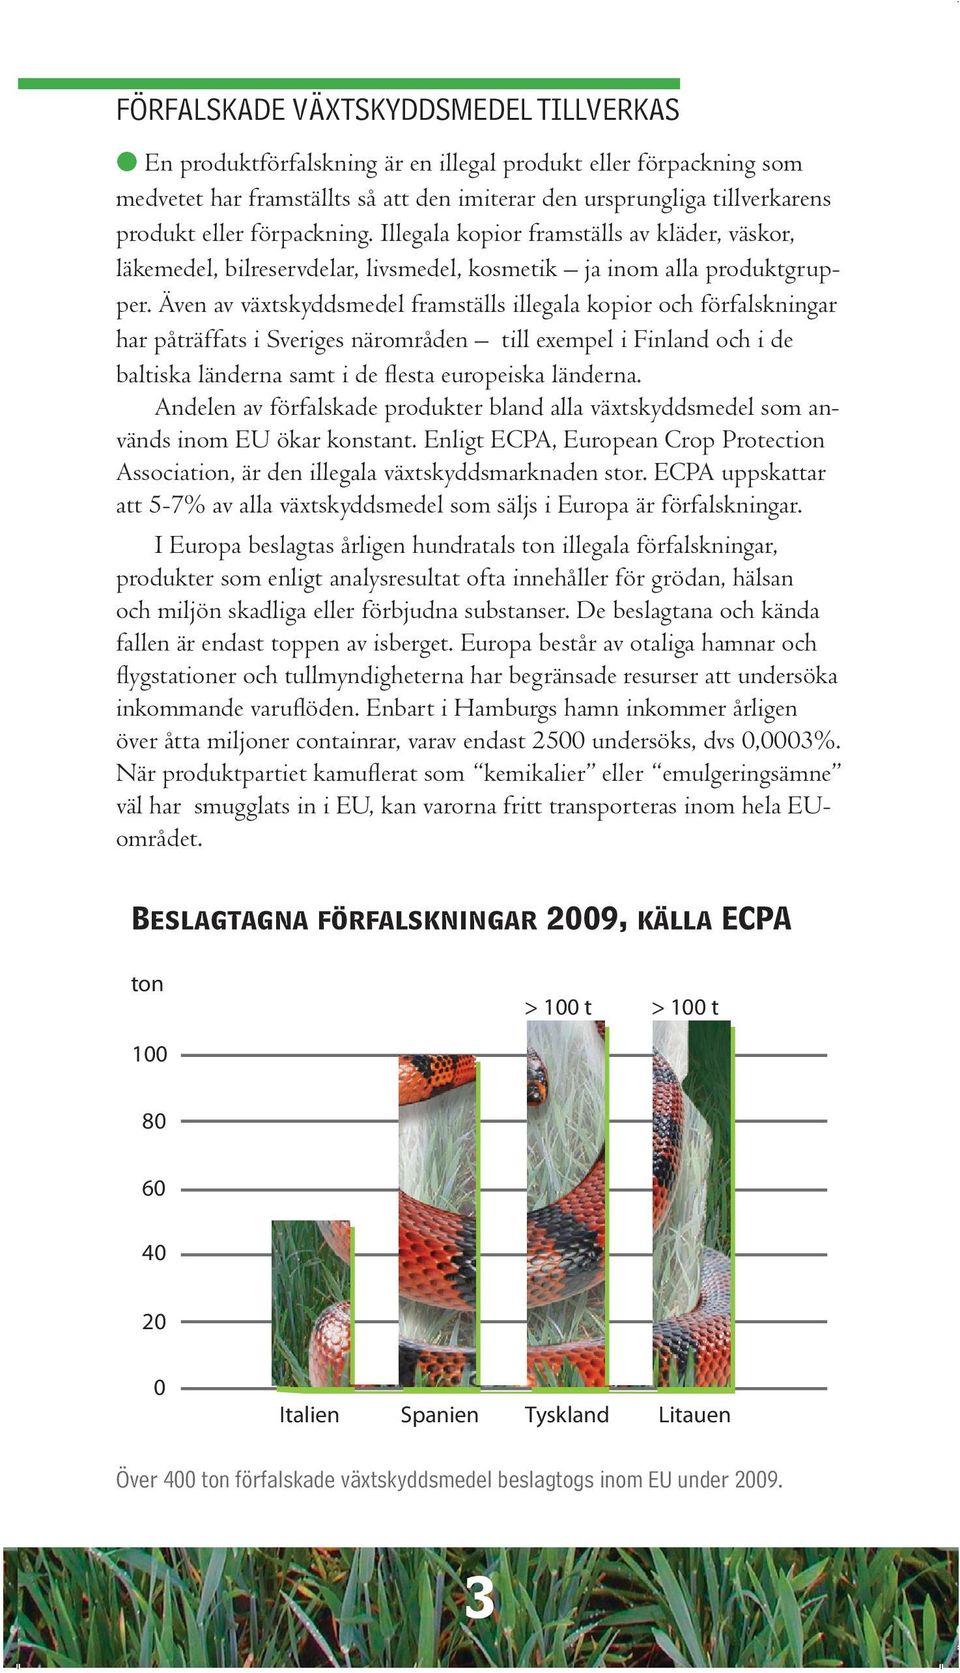 Även av växtskyddsmedel framställs illegala kopior och förfalskningar har påträffats i Sveriges närområden till exempel i Finland och i de baltiska länderna samt i de flesta europeiska länderna.